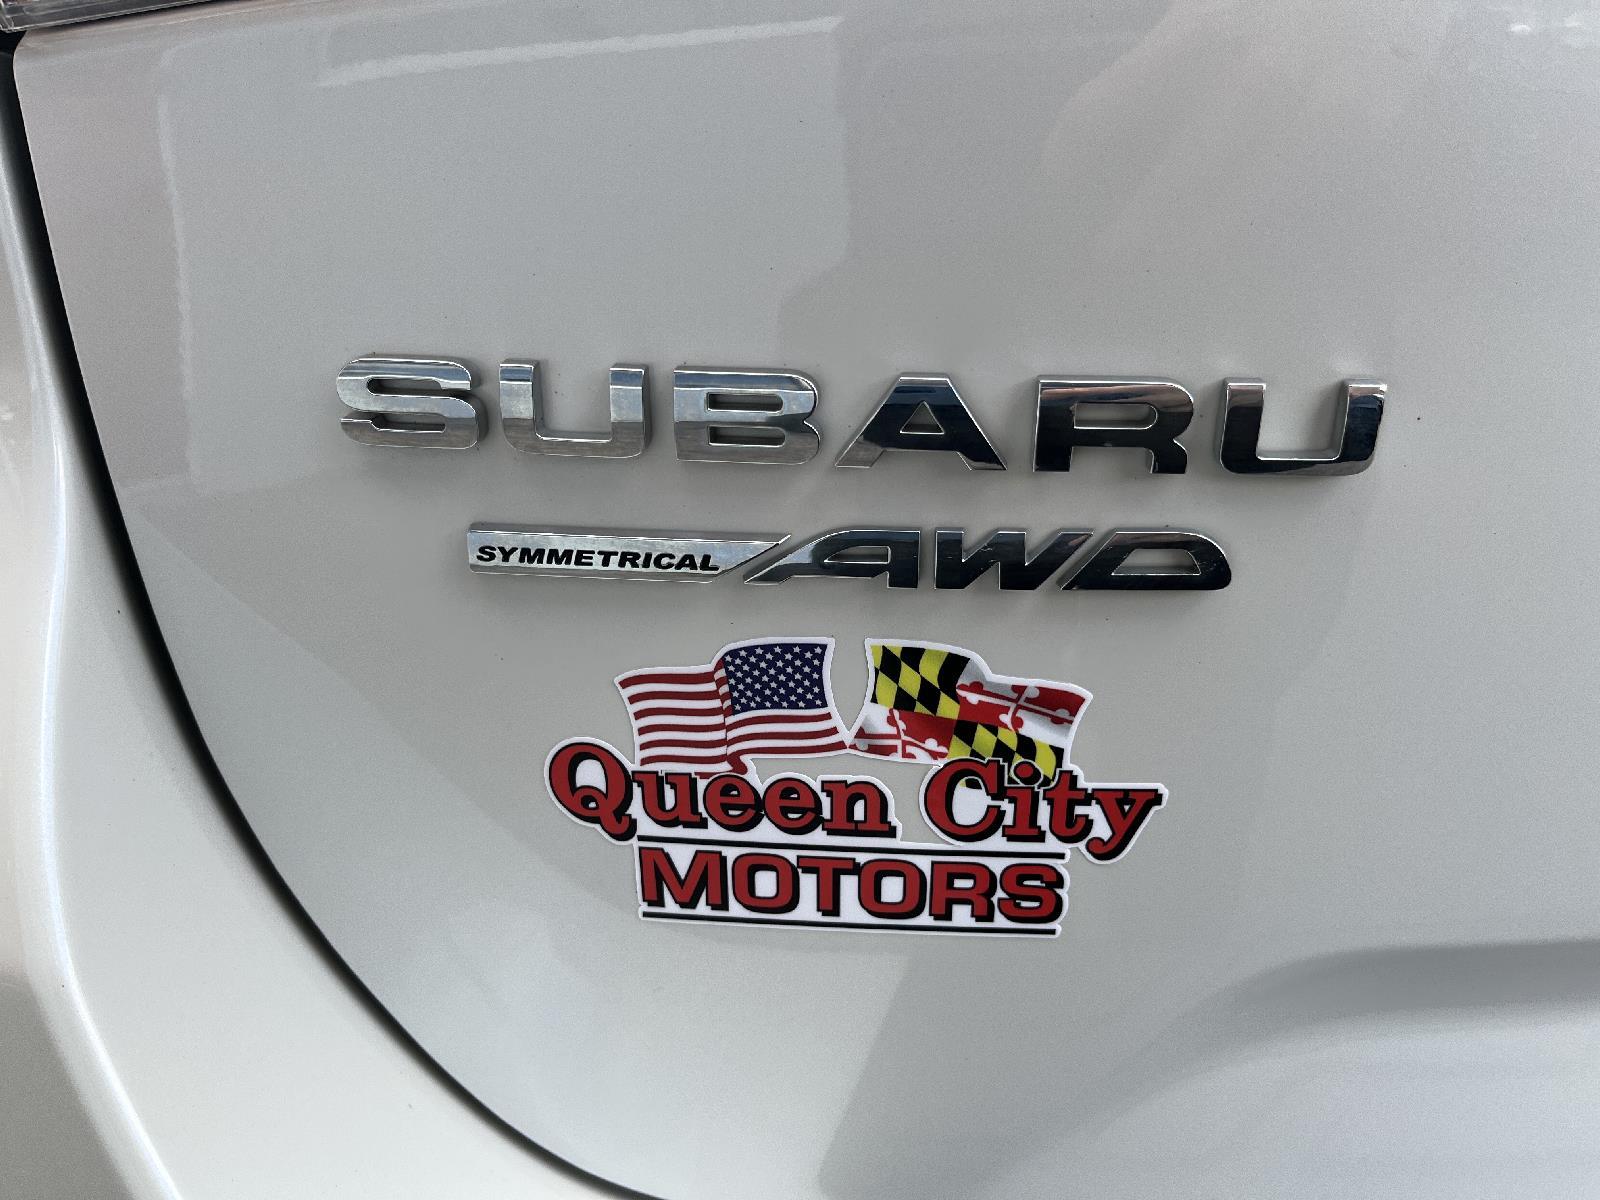 Queen City Motors